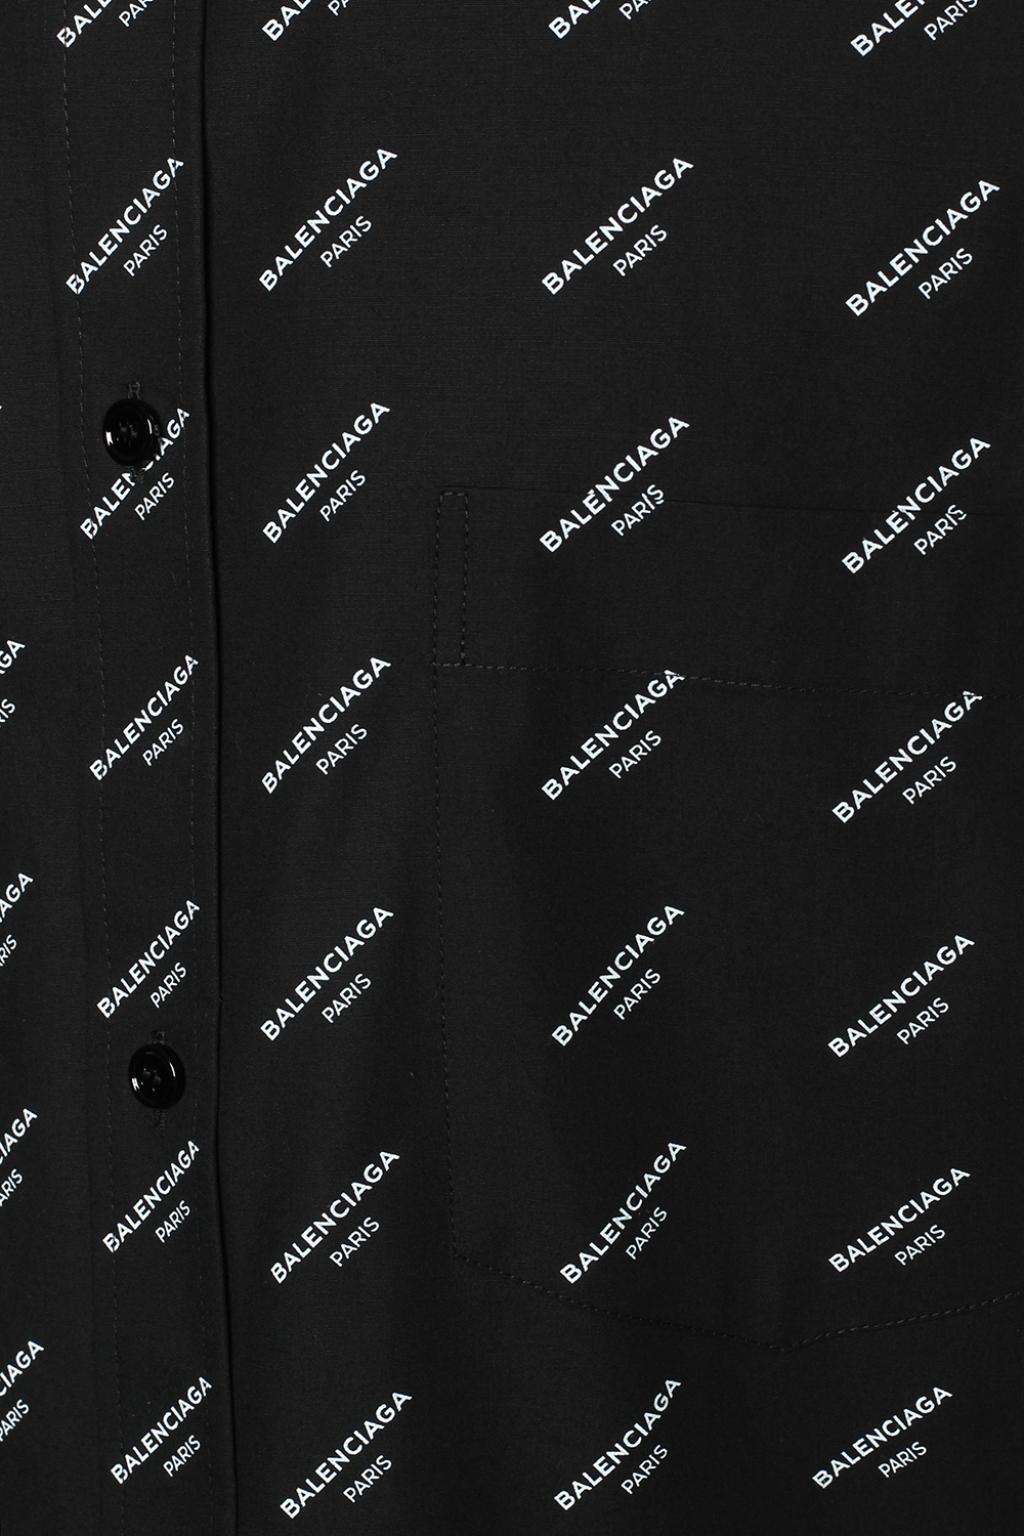 Balenciaga wallpaper  Diseños para camisetas Disenos de unas Apliques